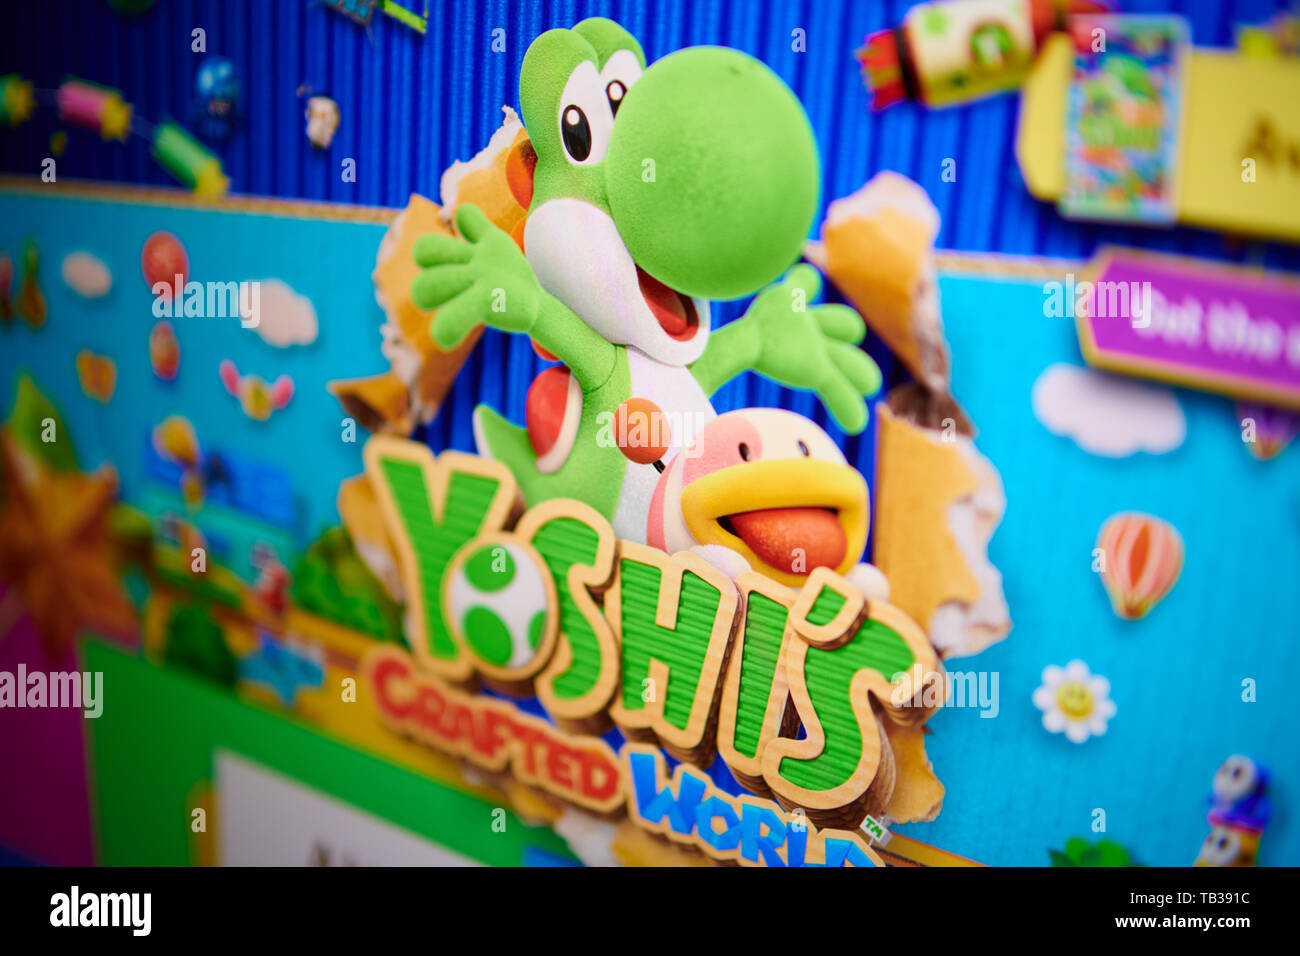 Prag - Mai 22, 2019: Closeup auf Yoshi-Charakter von Nintendo video game von der Seite Bildschirm fotografiert. Stockfoto